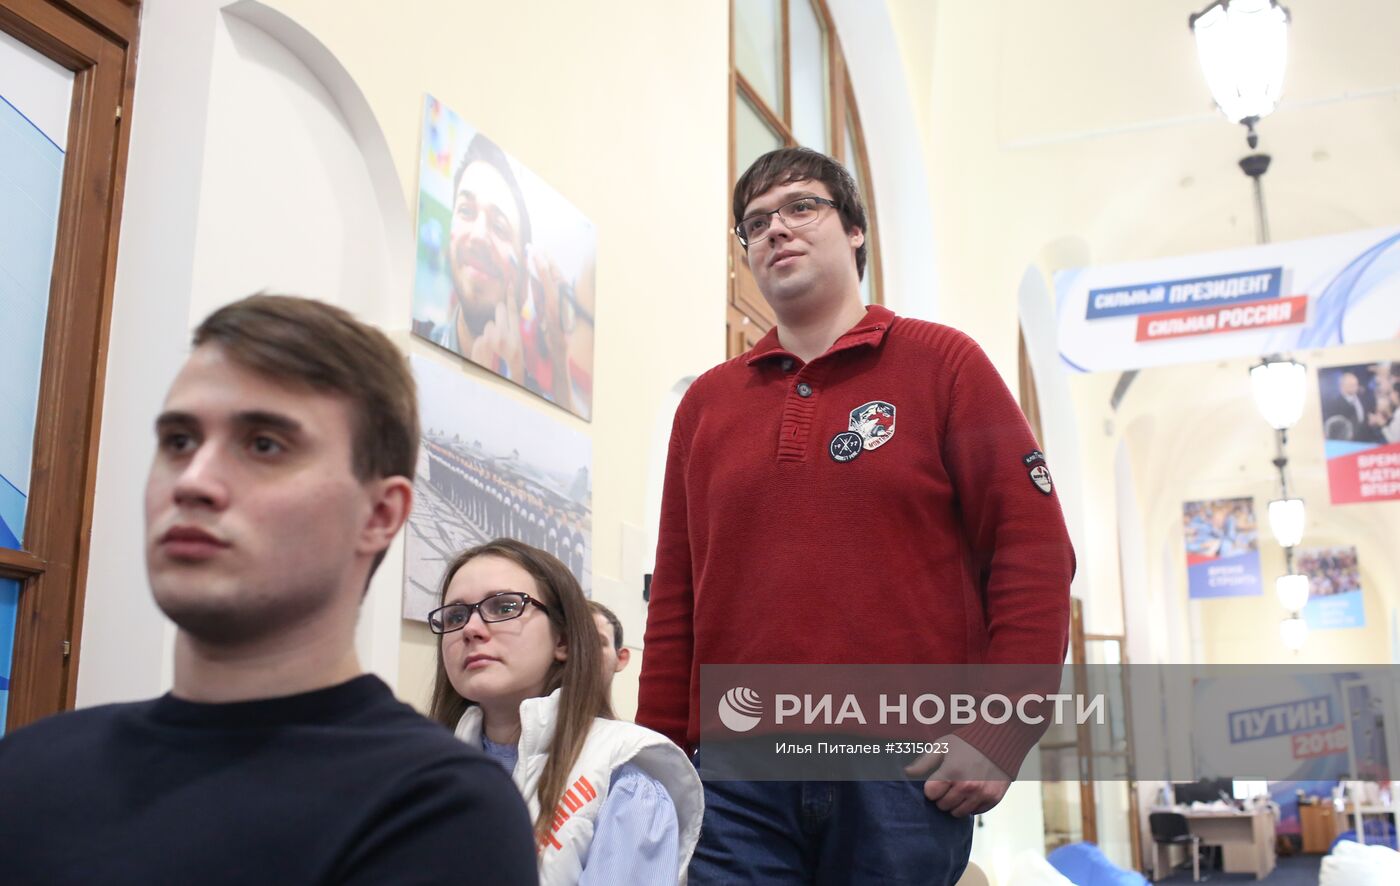 Обучение наблюдателей в предвыборном штабе кандидата в президенты РФ В. Путина